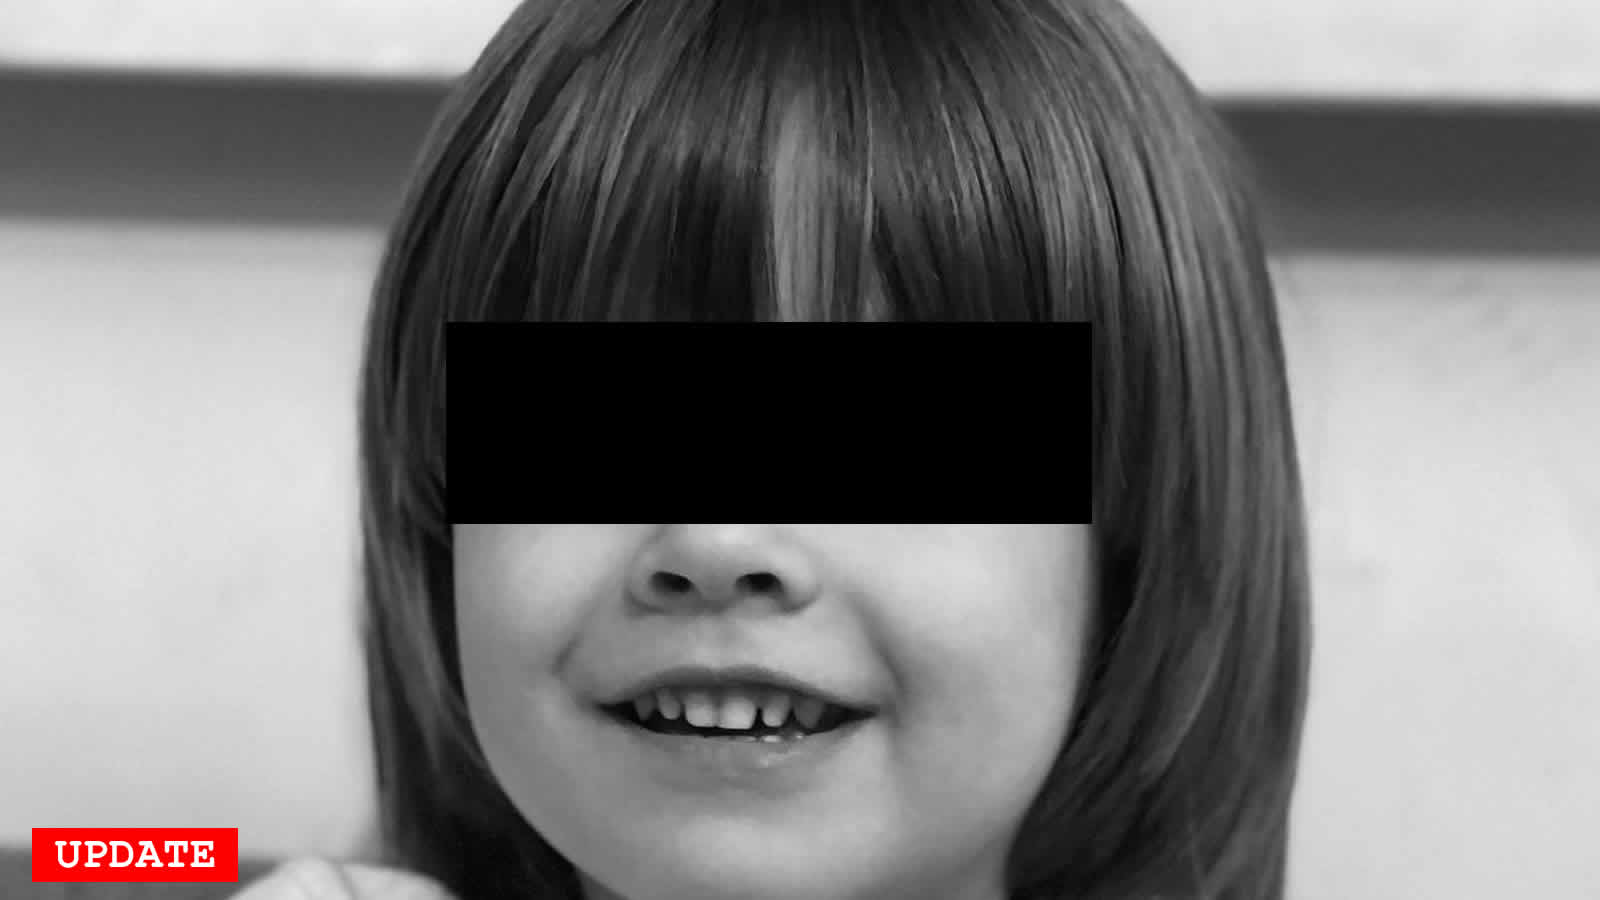 Leider nun traurige Gewissheit: Der kleine Alexander, Sasha genannt, ist tot. Der 6-Jährige wurde tot mit einer Schusswunde gefunden, so das ukrainische Parlament auf Twitter.